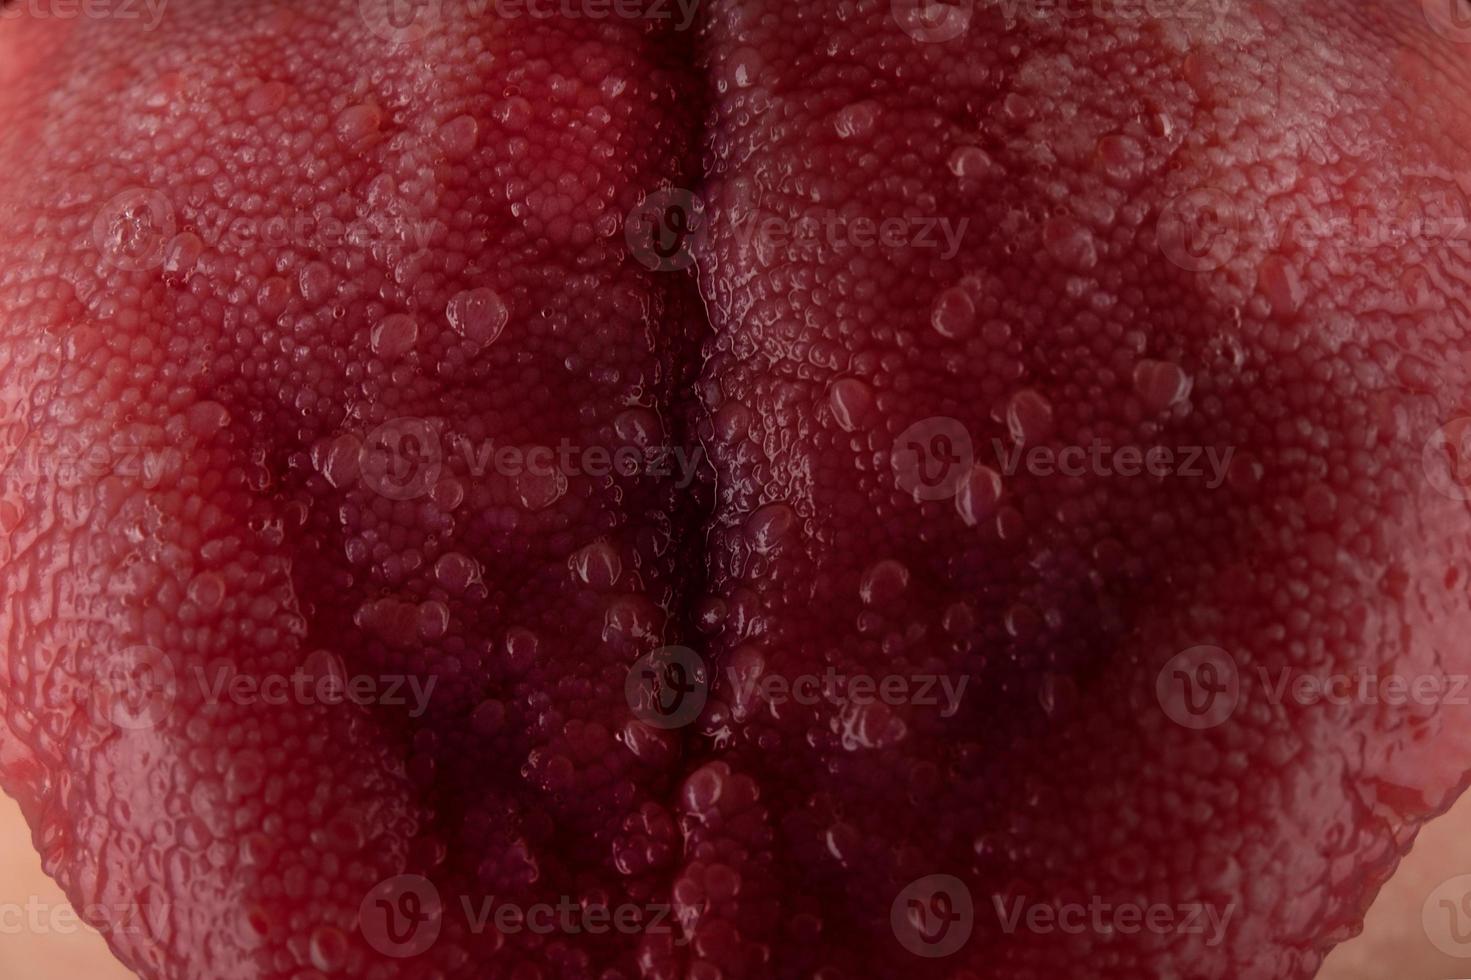 lengua con estomatitis de cerca, cáncer oral foto